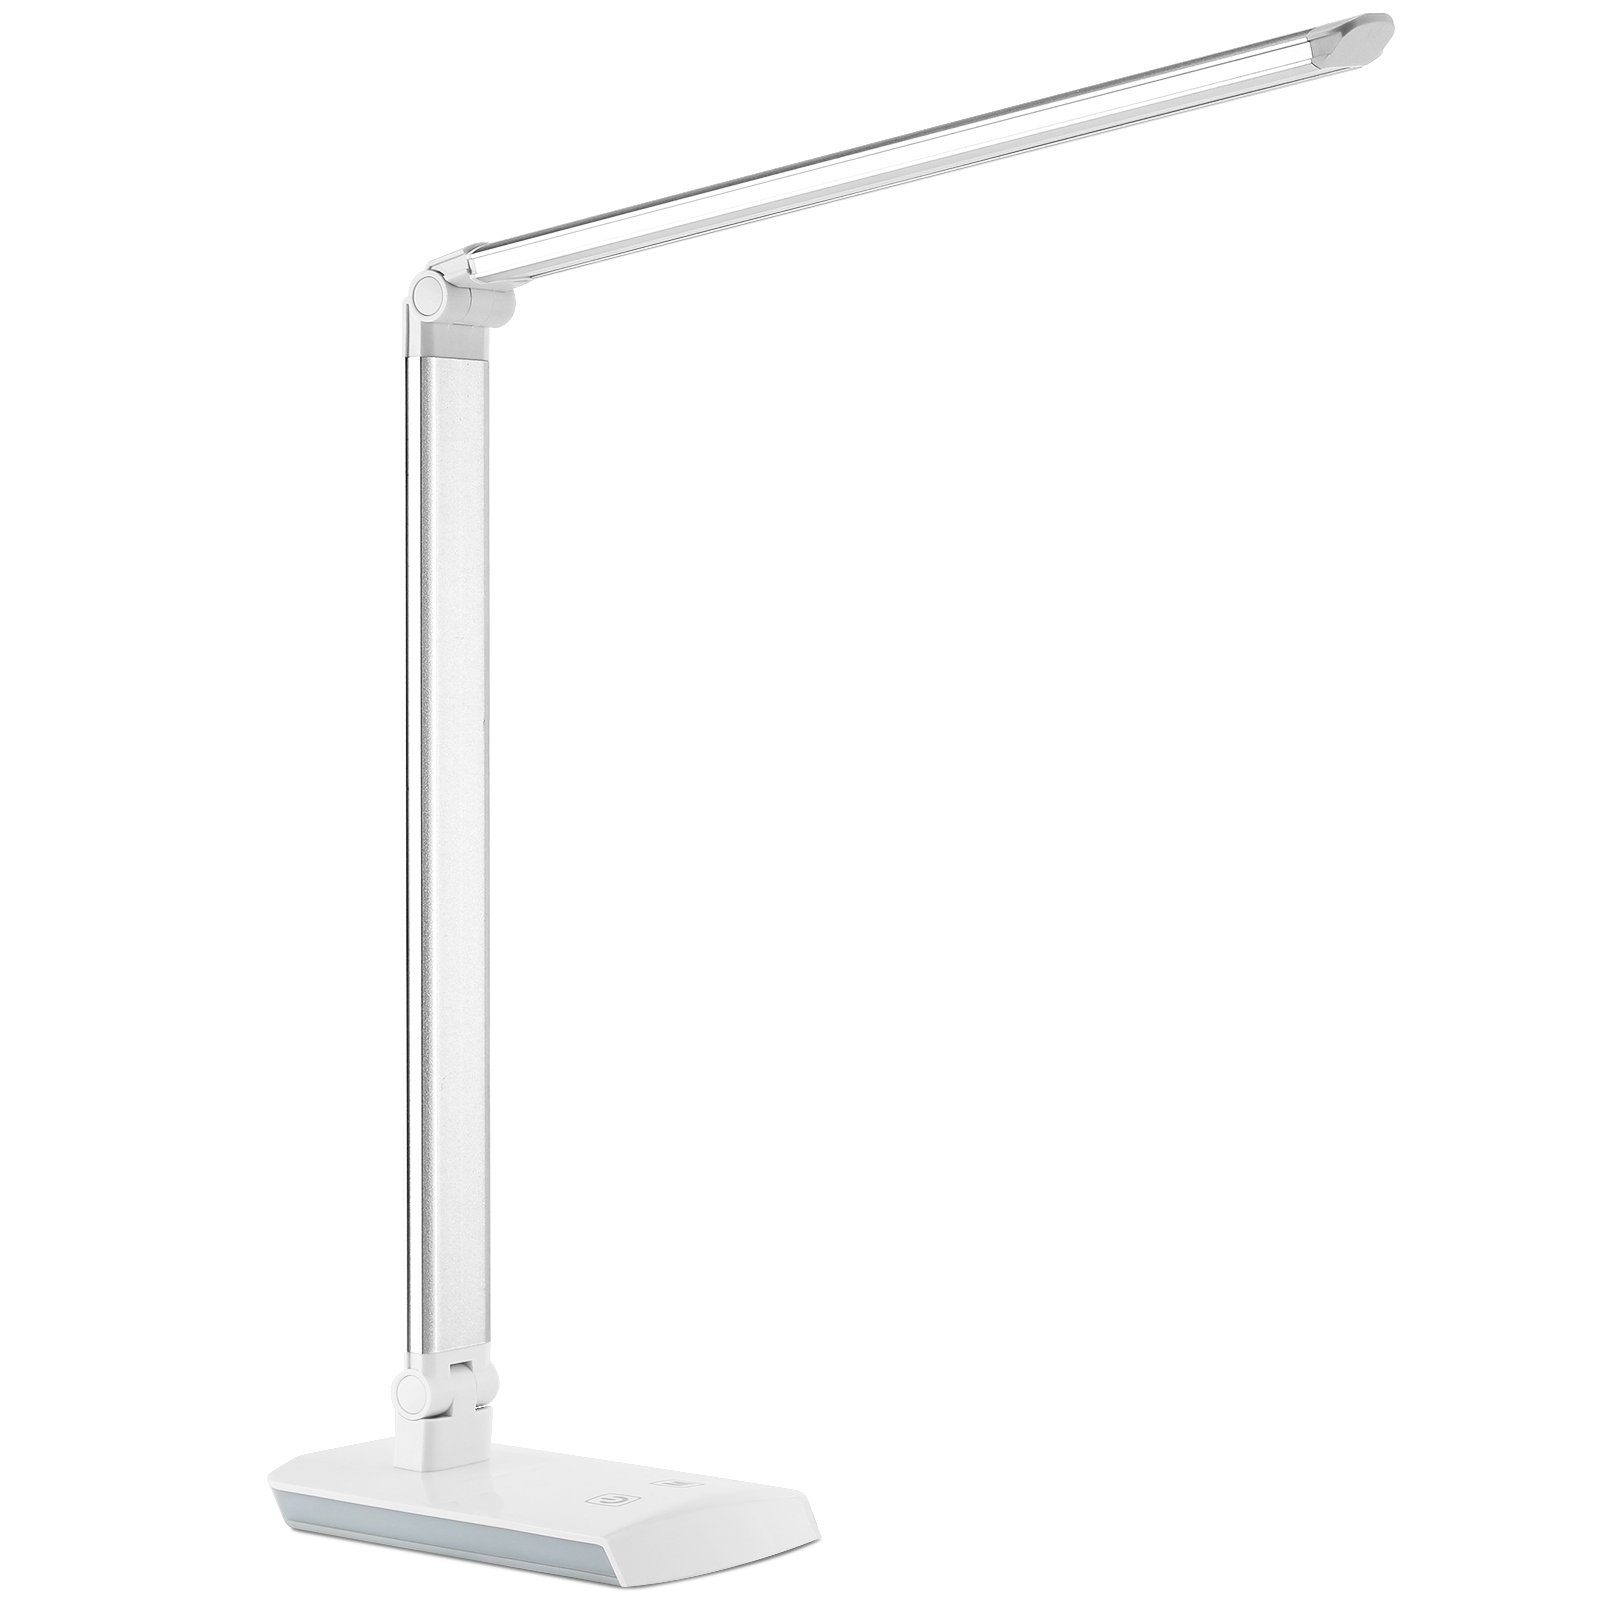 USB LED Tisch Leuchte Schreibtisch Lampe Büro Dimmbar Touch Faltbare Leselampe 